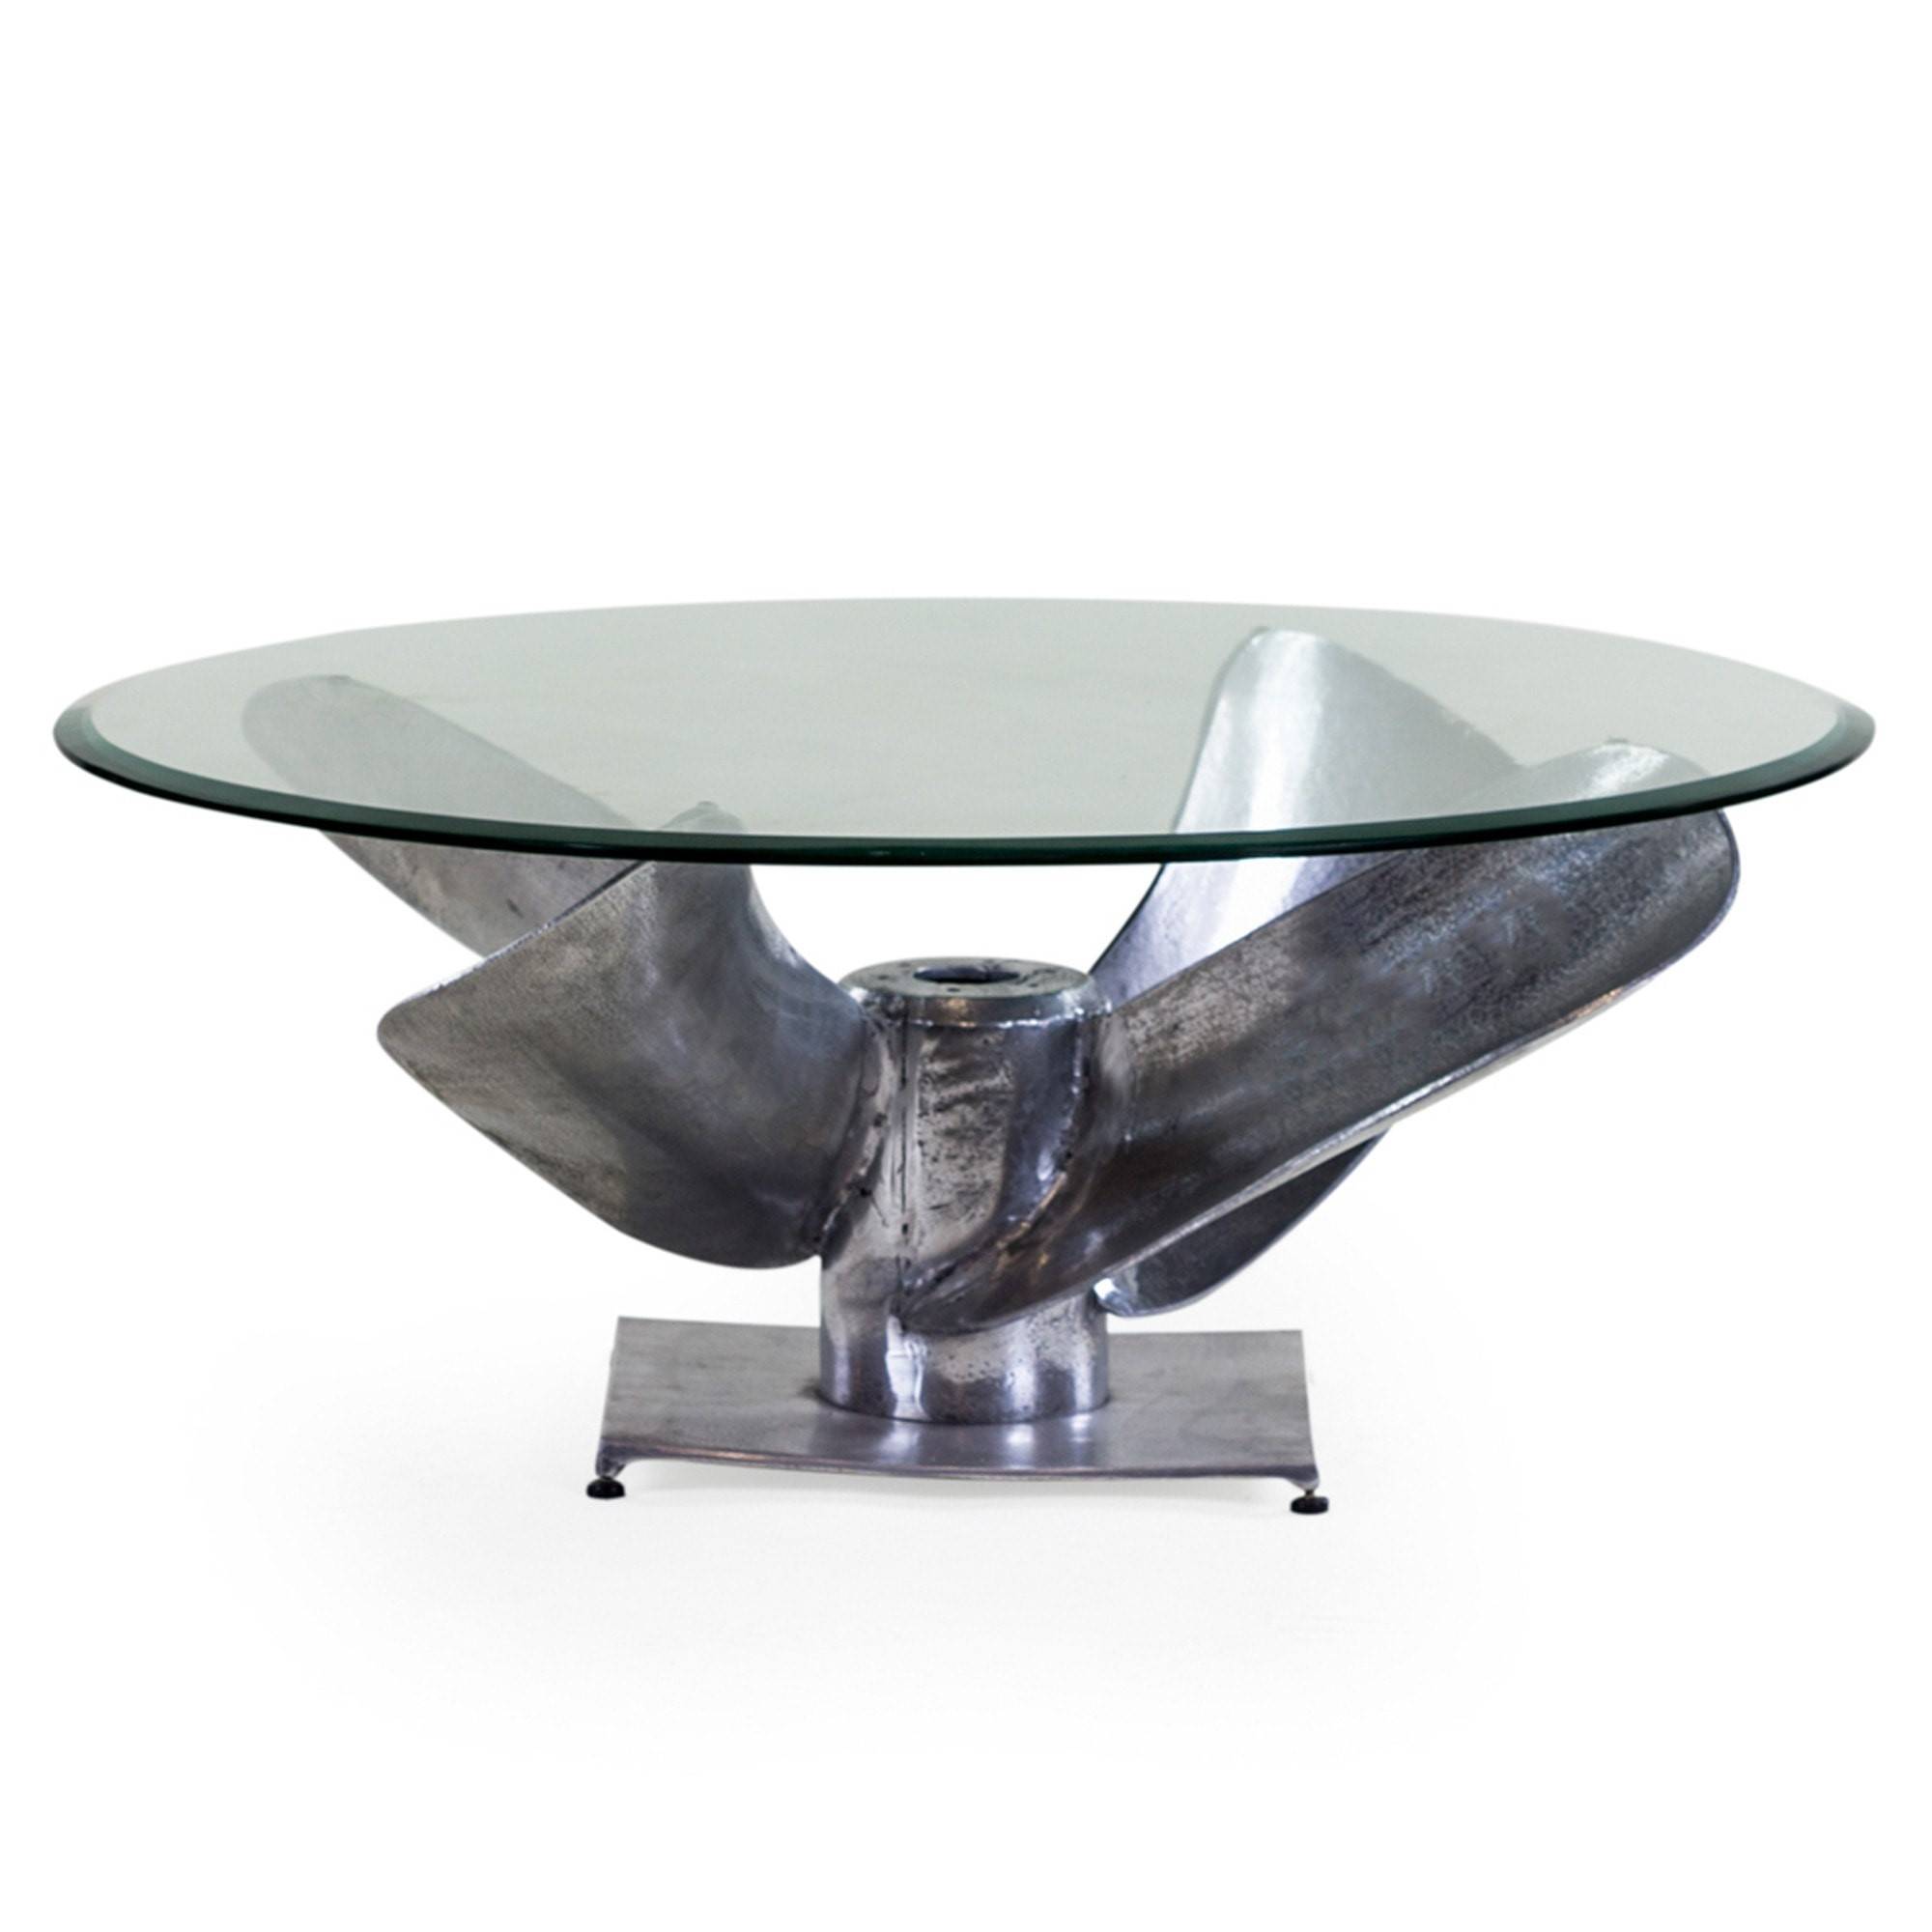 Bàn trà mặt kính có chân bàn tách rời phần mặt bàn giúp dễ di chuyển đến nhiều không gian trang trí khác nhau